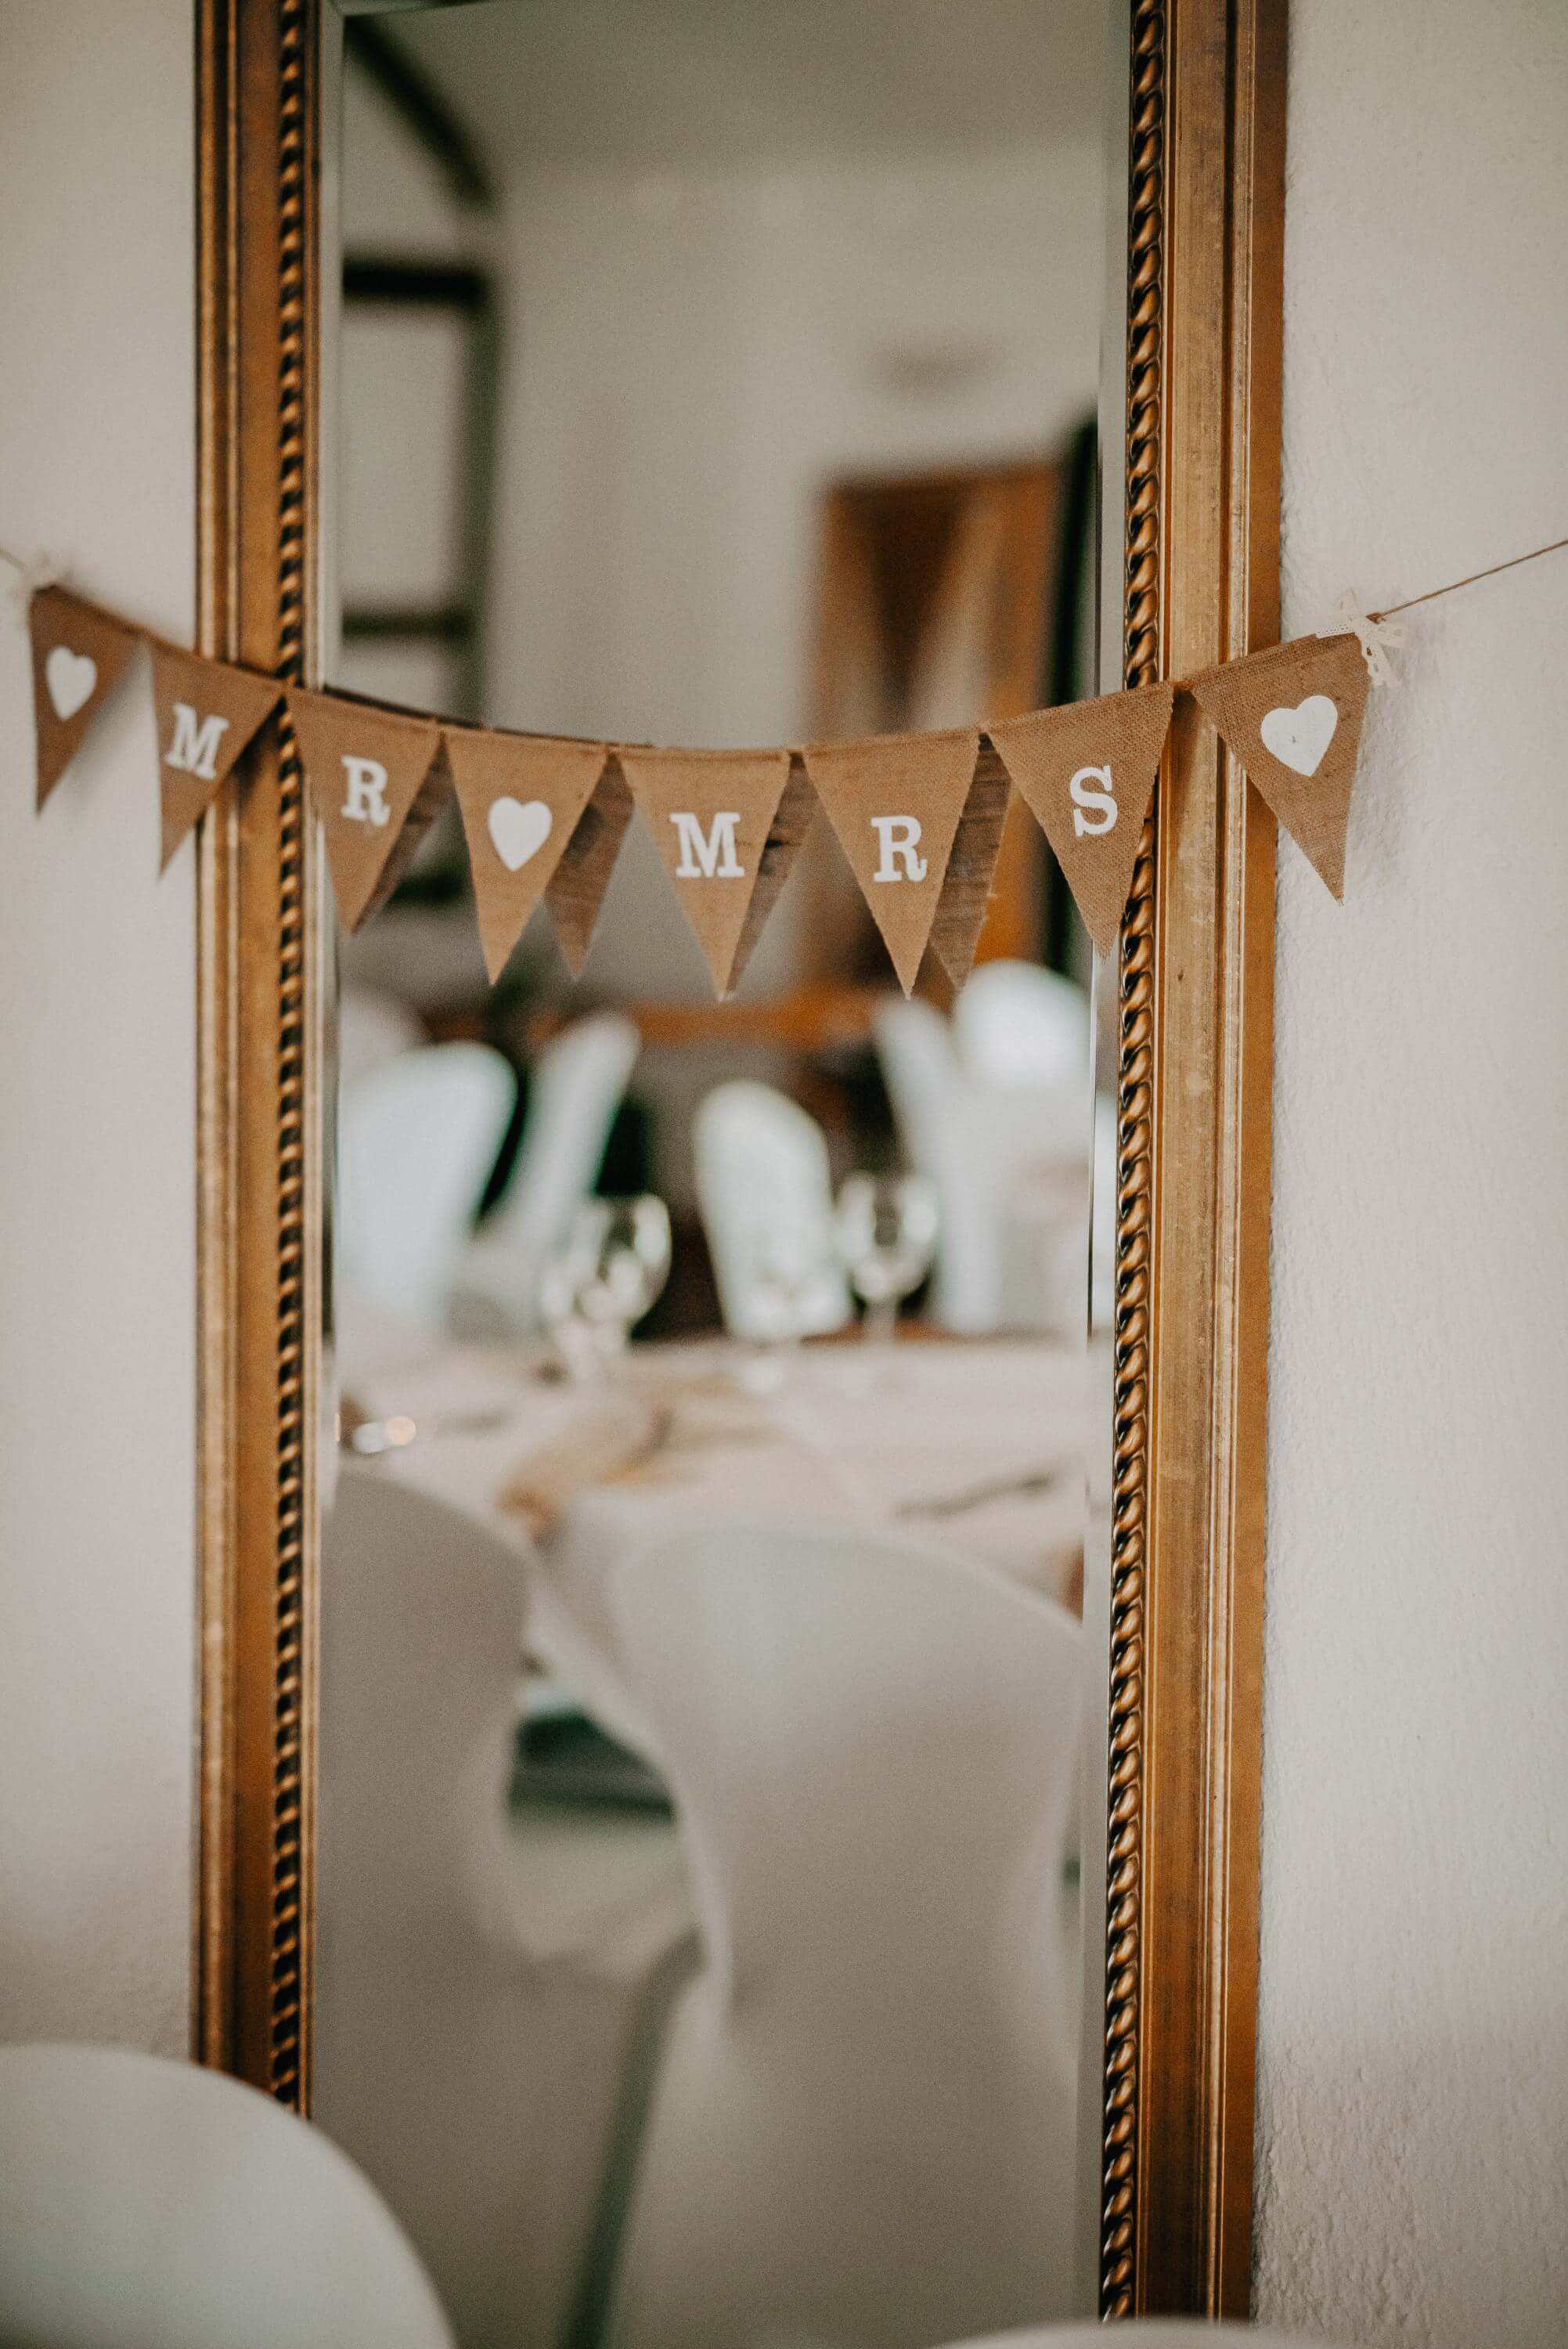 Vor einem großen langen Spiegel mit prunkvollem Rahmen an der Wand hängt eine Wimpelkette mit dem Motiv 'Mrs & Mr' zur Hochzeit. Im Spiegel sieht man einen Stuhl mit weißer Husse an einem runden Tisch für die Hochzeitsgesellschaft.